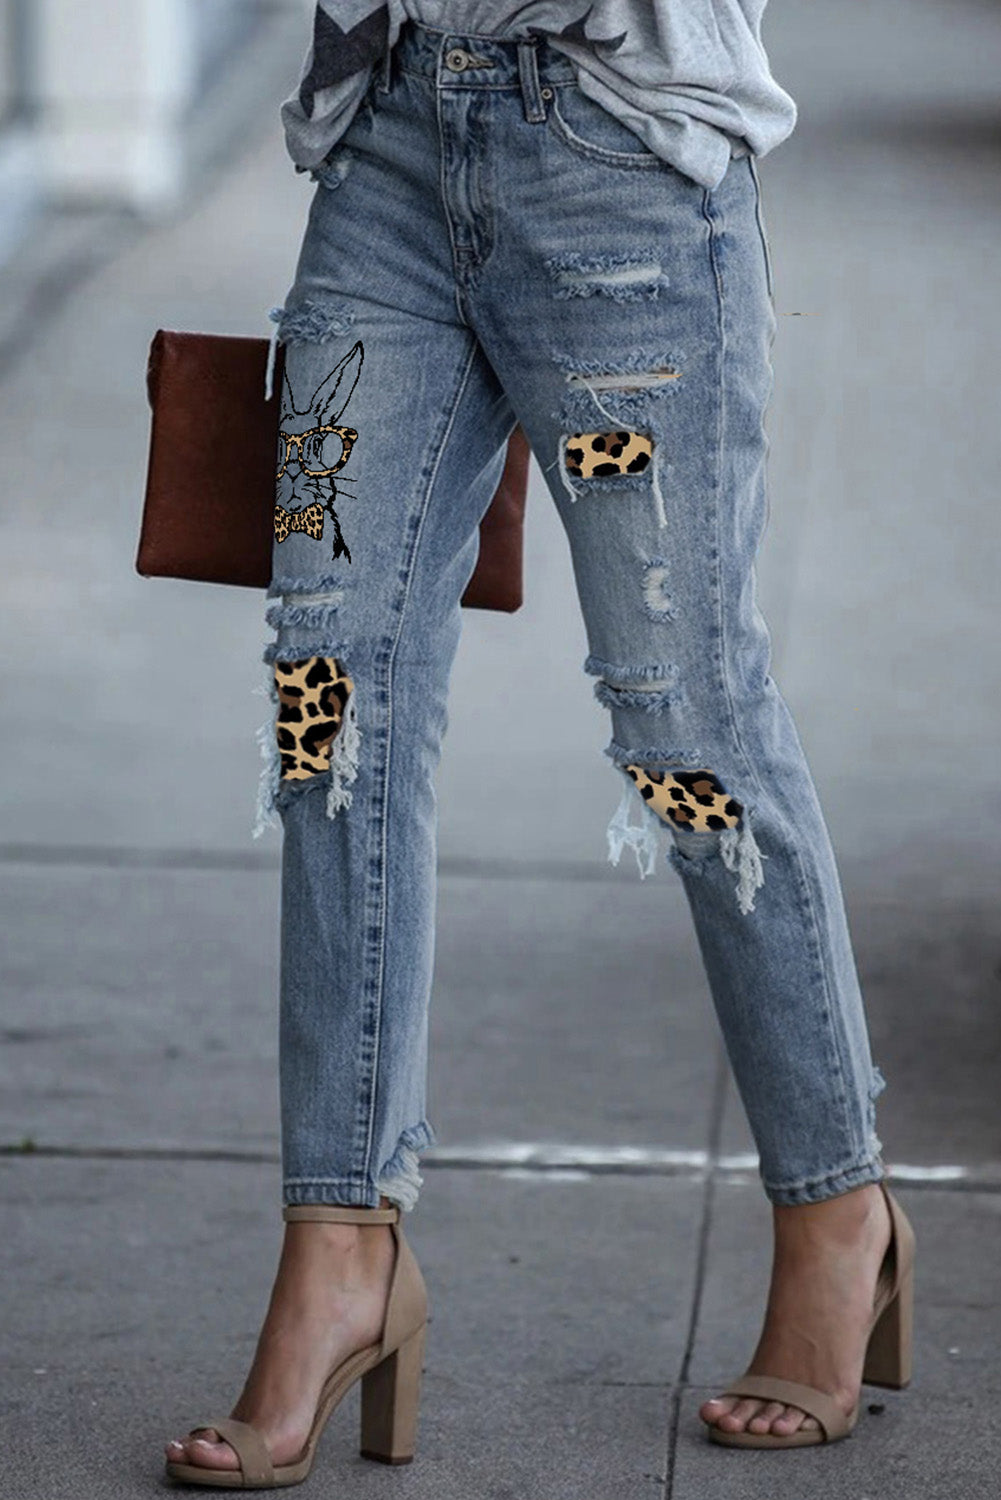 Bunny Hop Leopard Patch Graphic Jeans